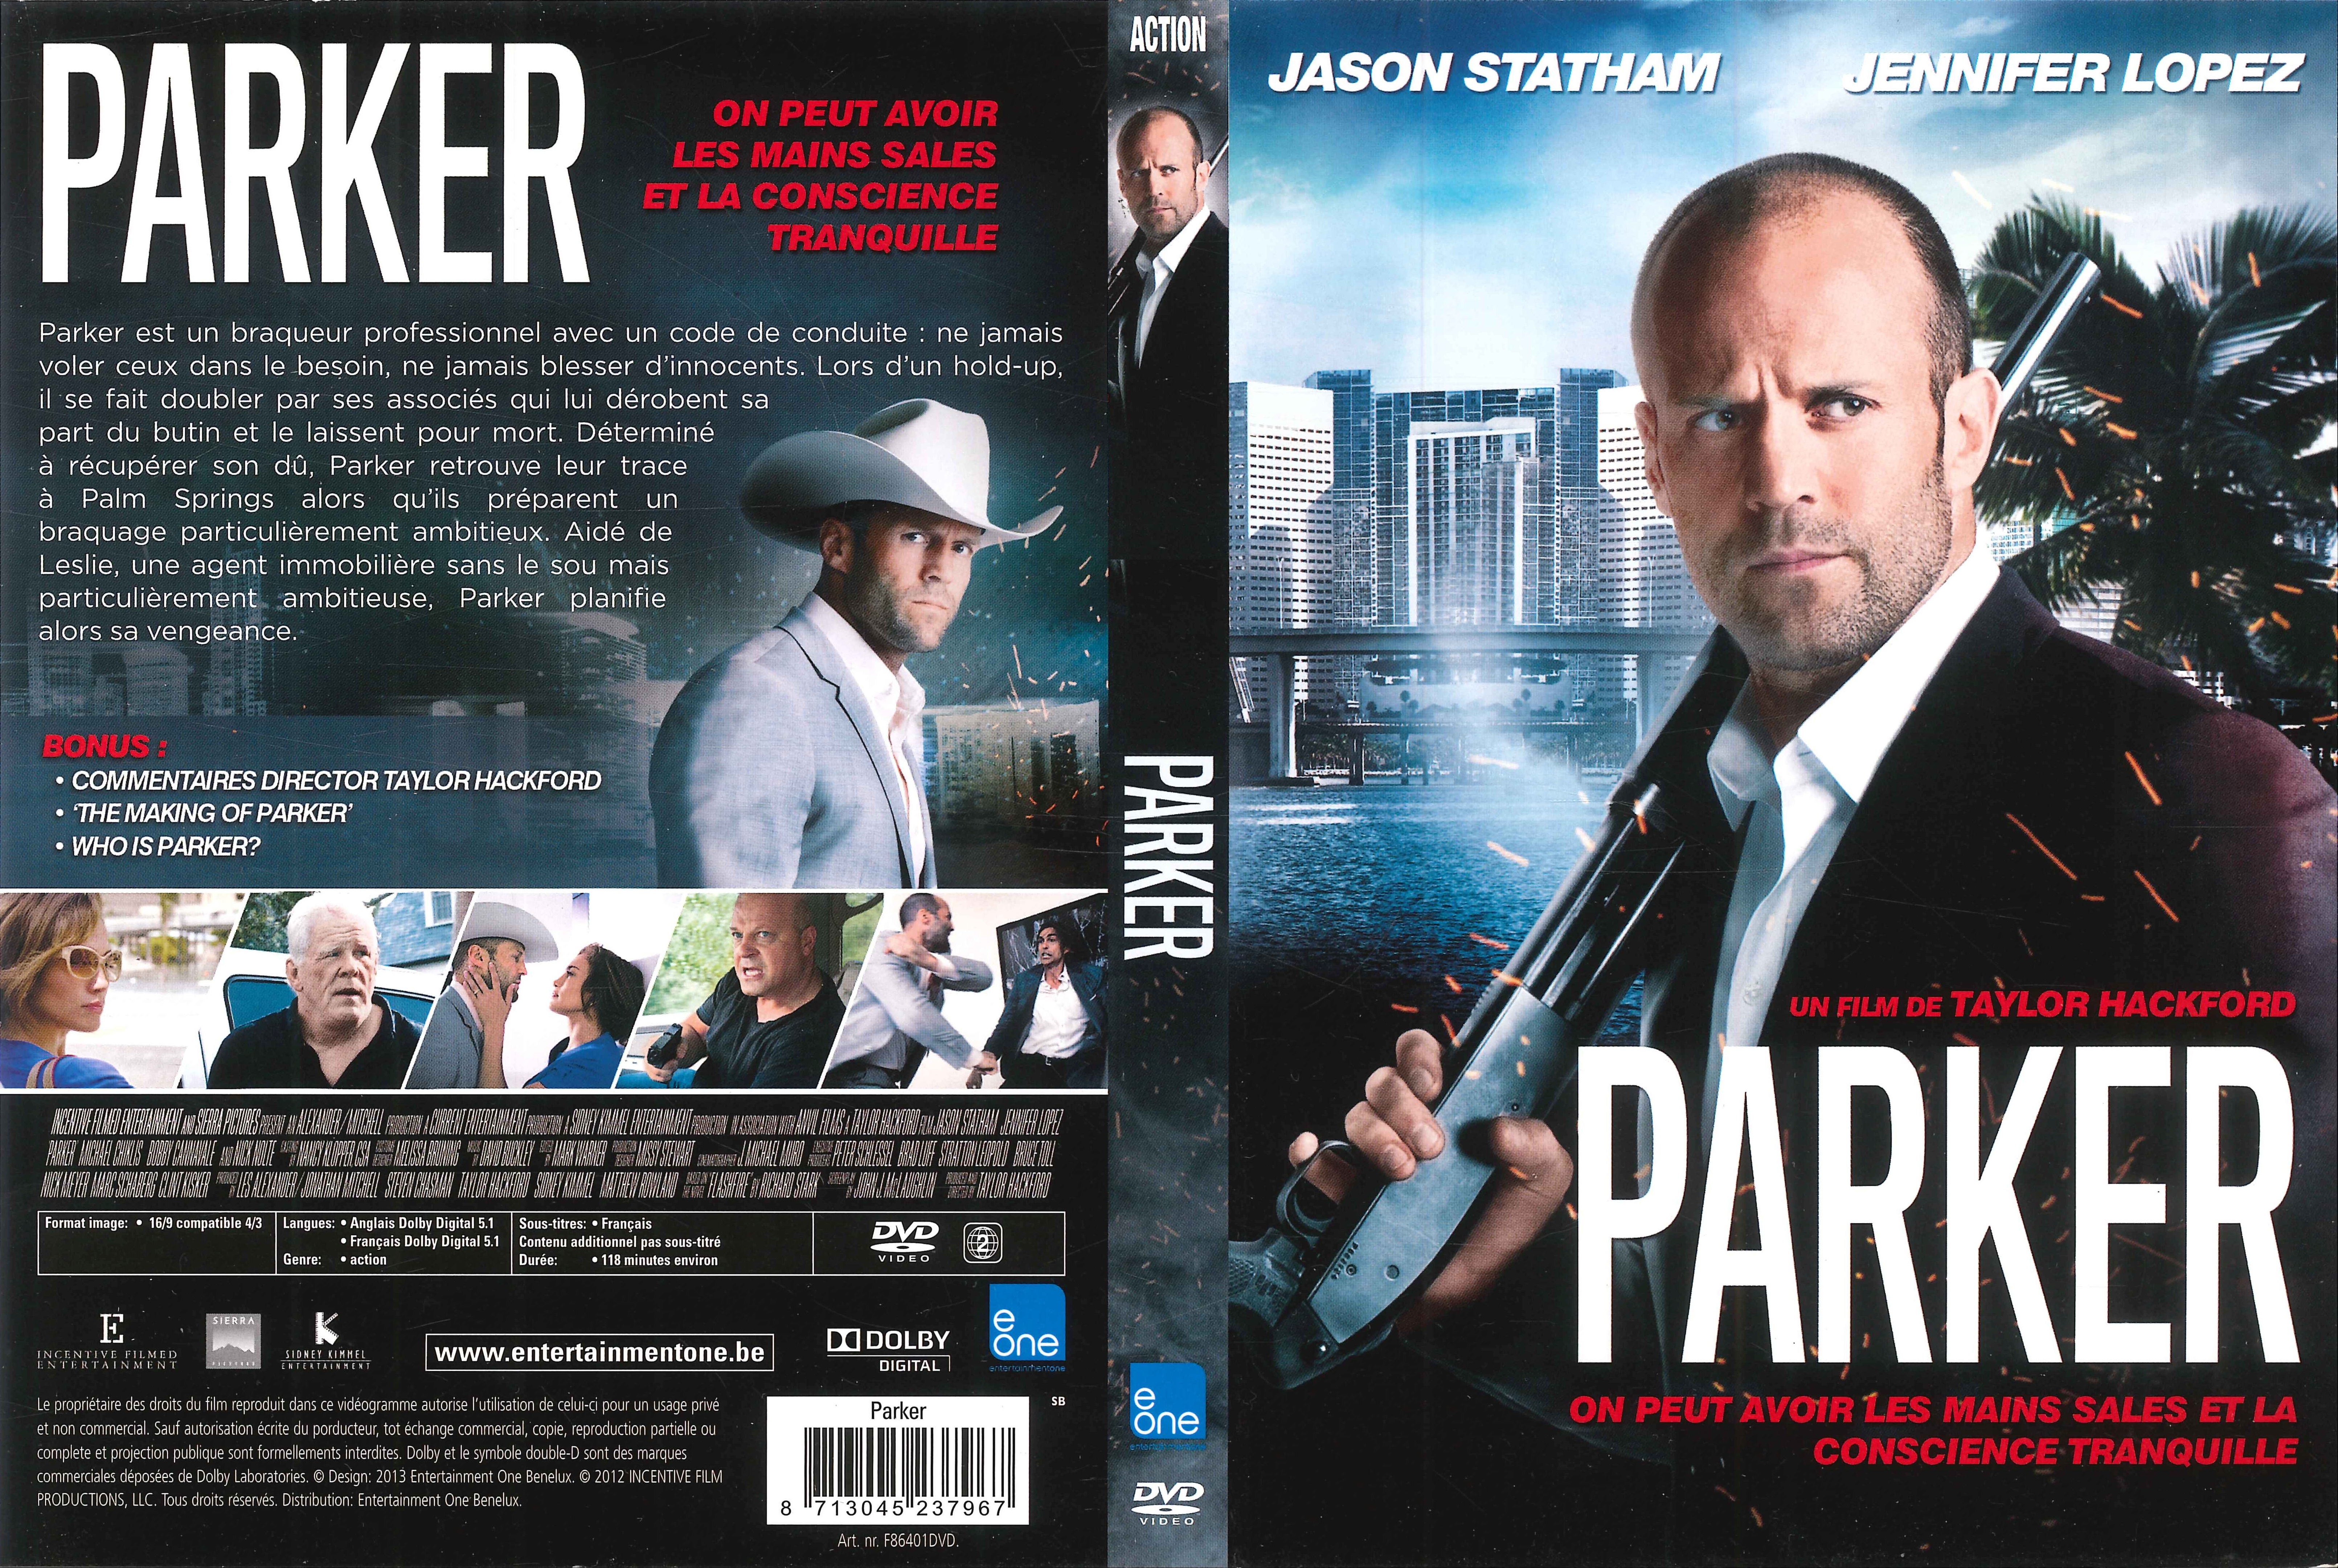 Jaquette DVD Parker v2